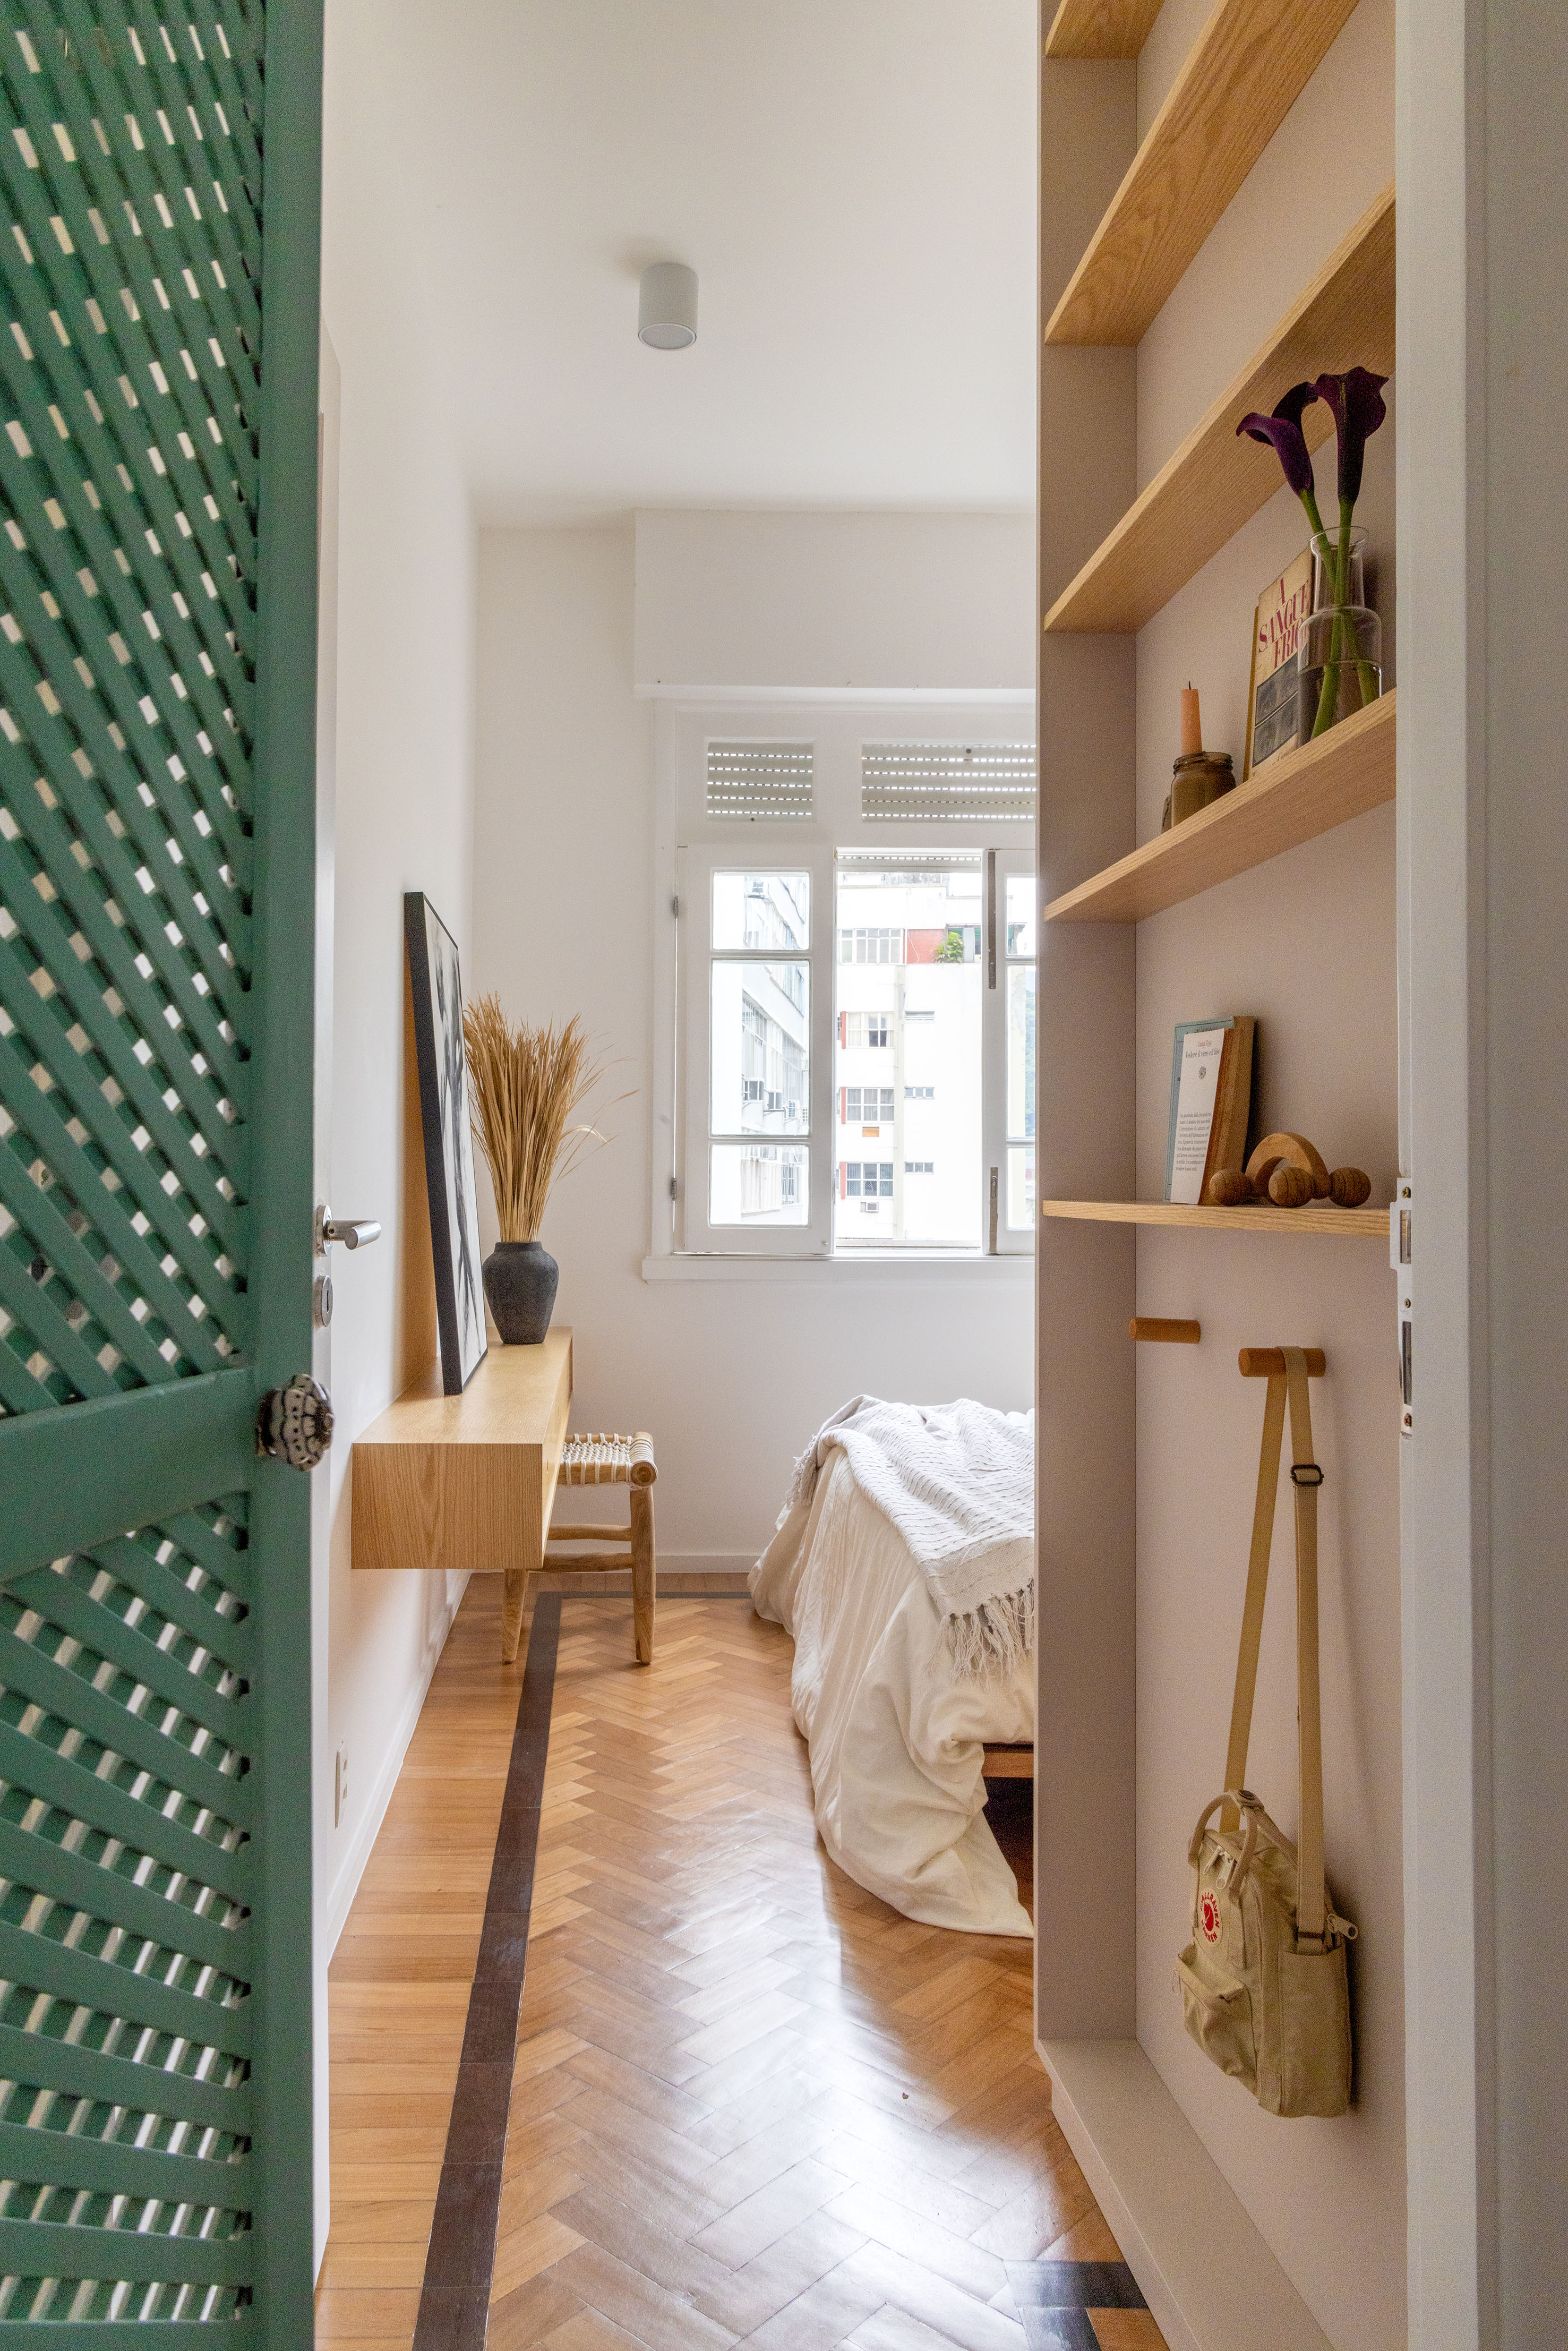 Ladrilhos hidráulicos trazem charme vintage e cor à apê de 90 m². Projeto de Ana Neri. Na foto, quarto, muxarabi verde, cabideiro.